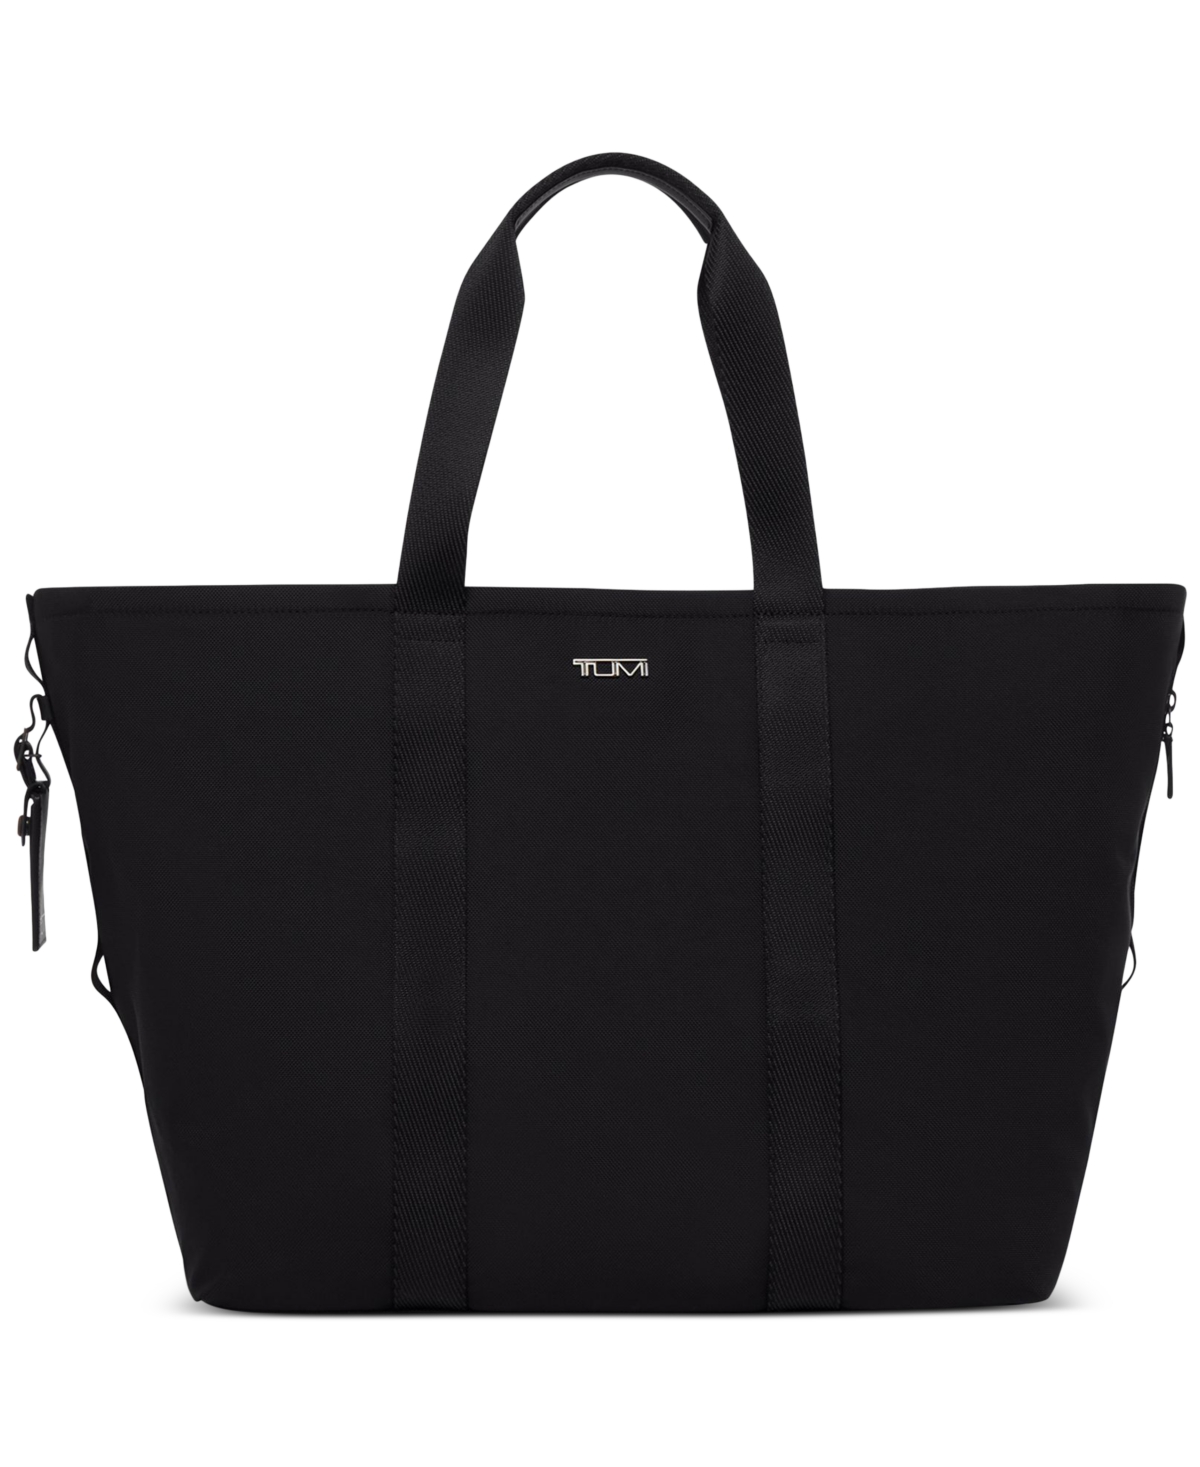 Tumi Essential Medium Tote Bag In Black